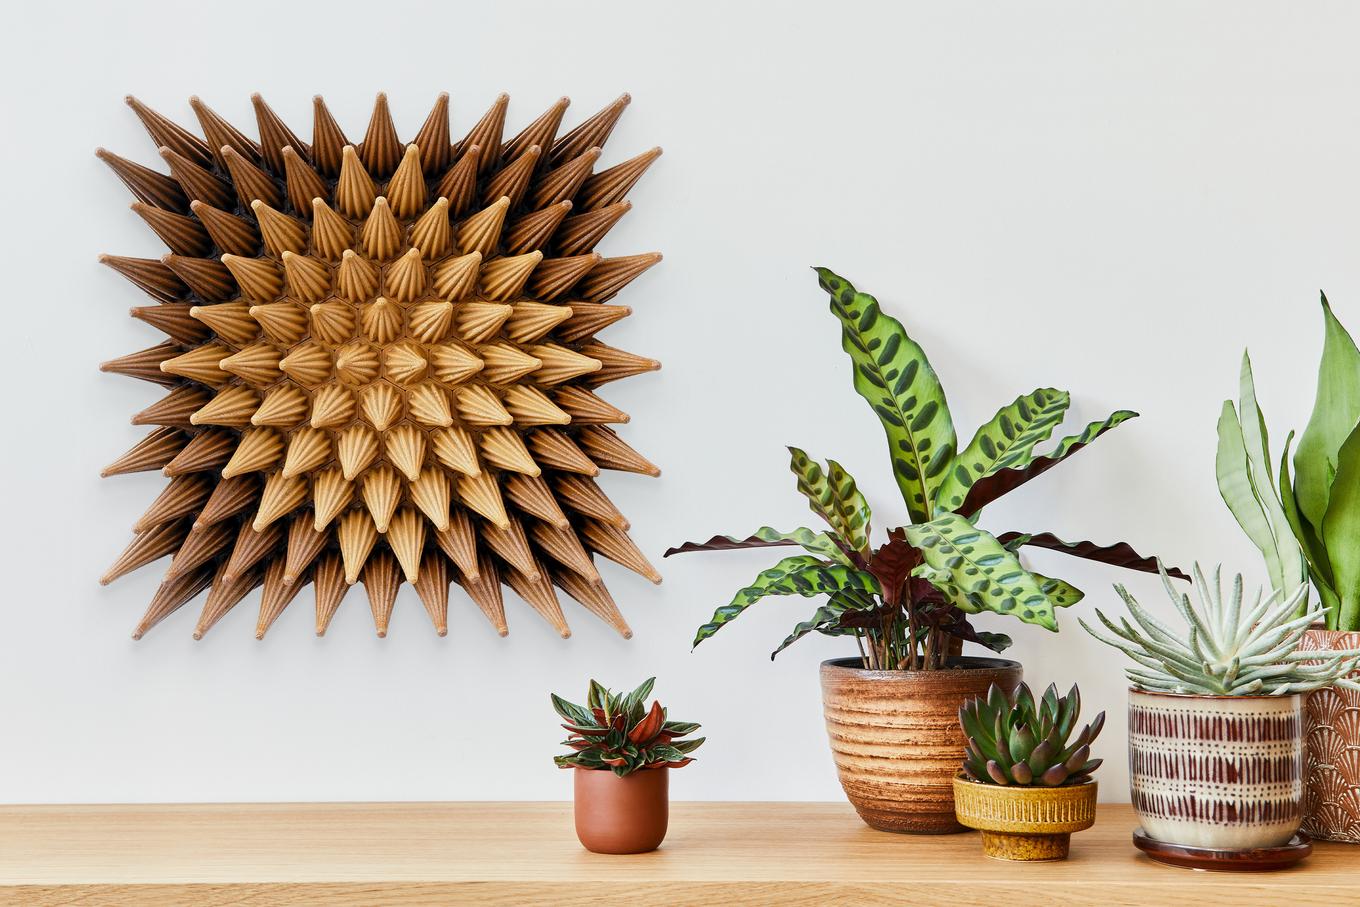 Wooden Sunshine Sprouts | Herschel Shapiro | Modern Dimensional 3D Wall Art Mosaic 